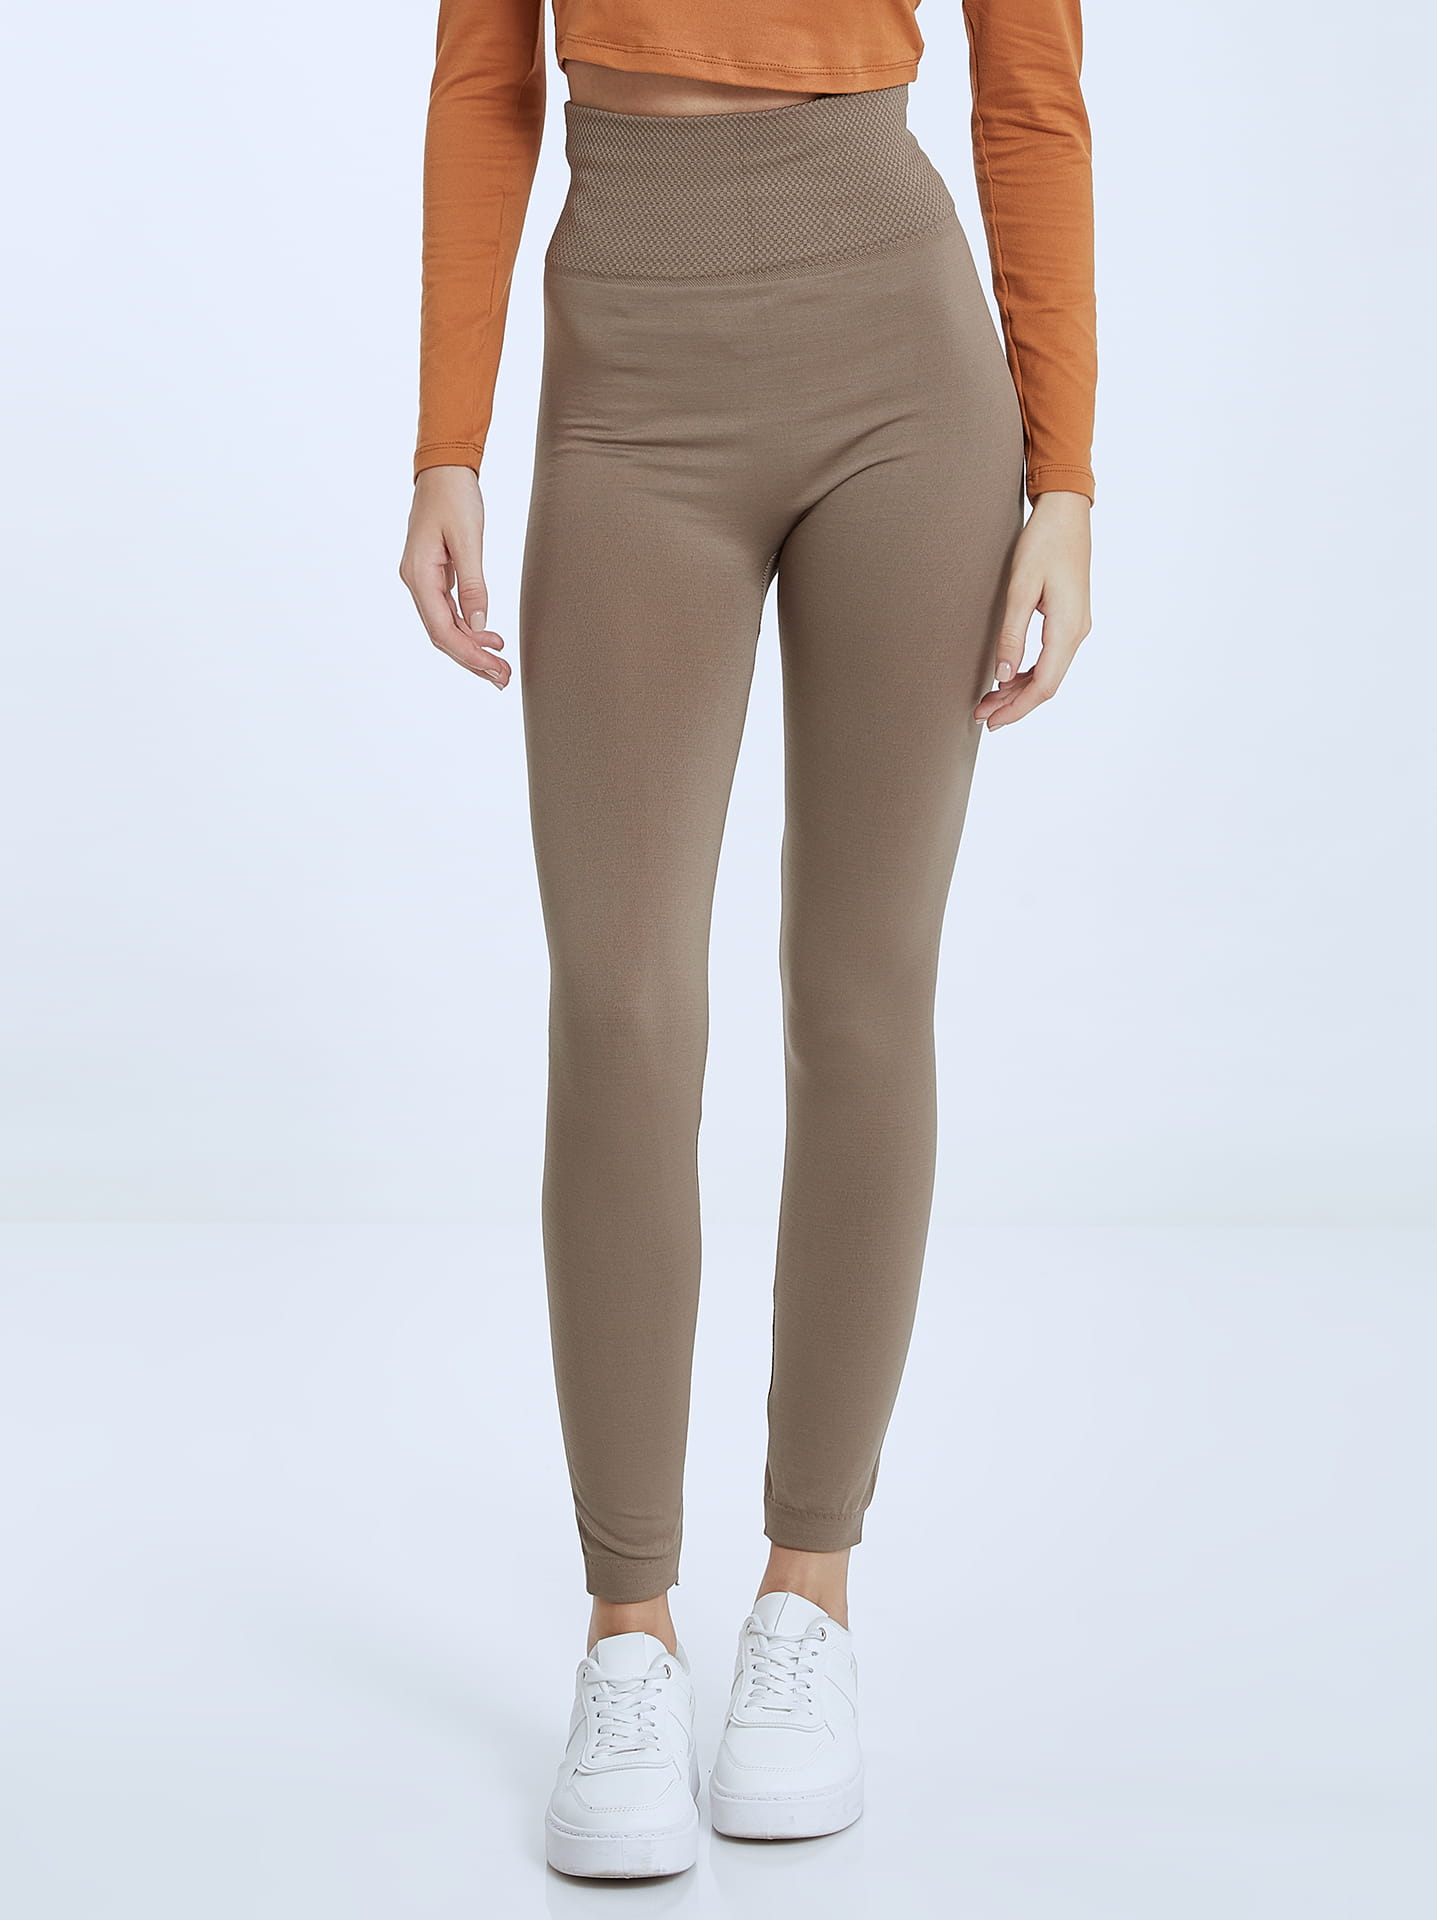 Elastic thermal leggings in light brown, 6.99€